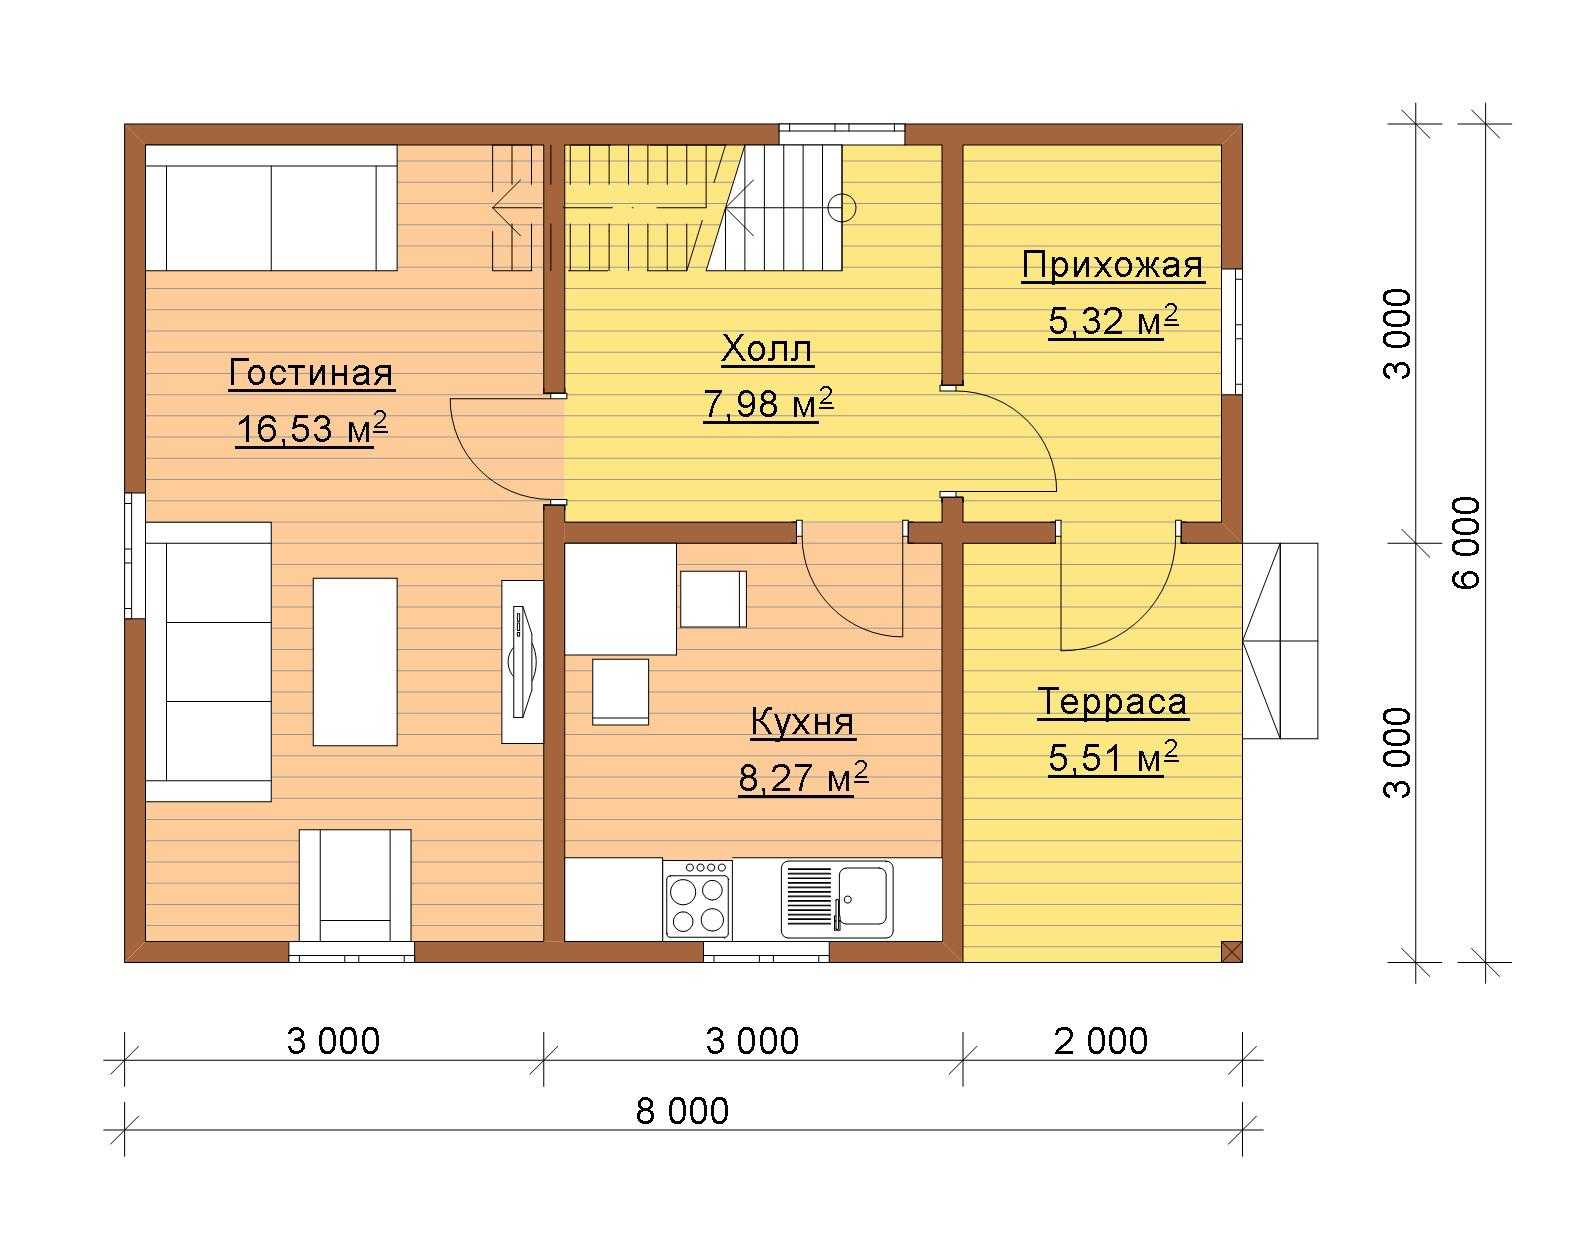 Каркасный дом 6х8 одноэтажный и двухэтажный, сколько стоит постройка, планировка и проект строительства